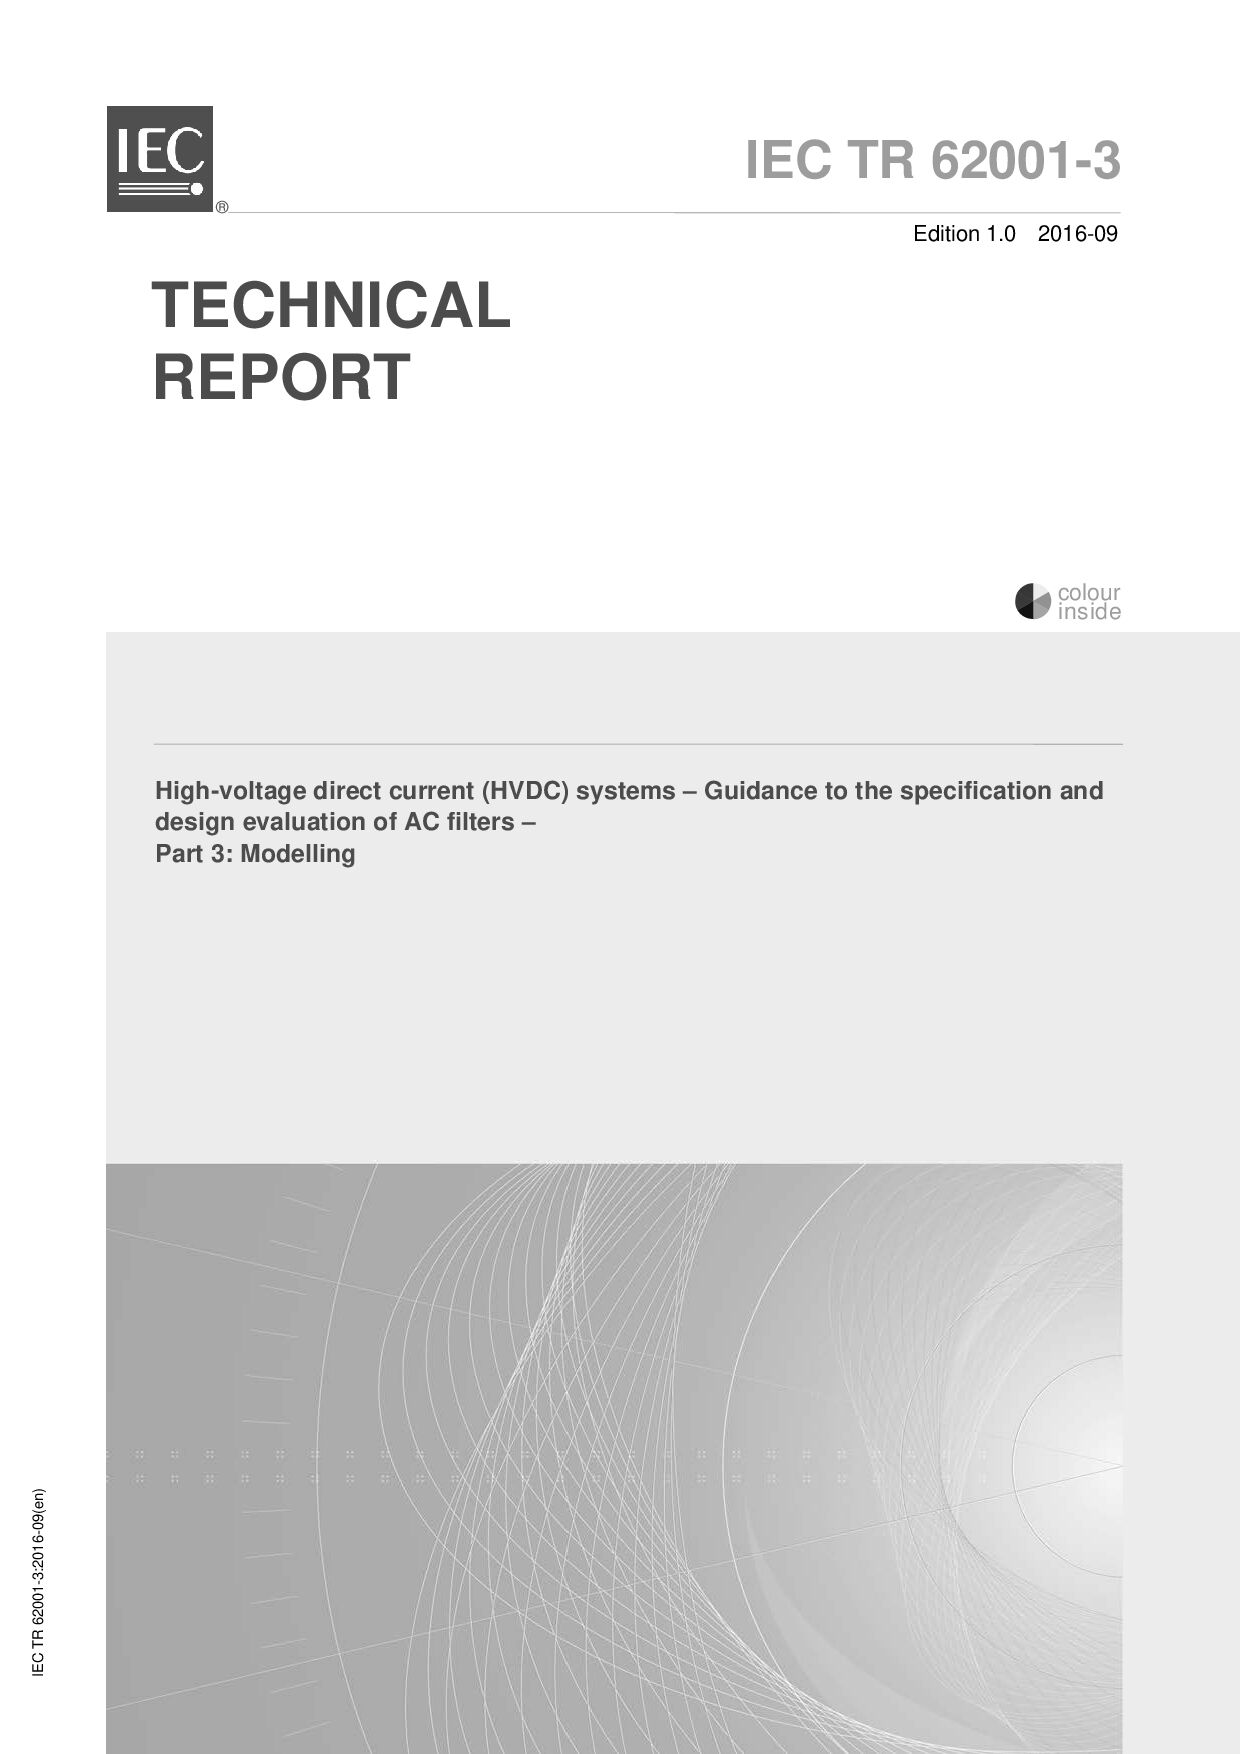 IEC TR 62001-3:2016